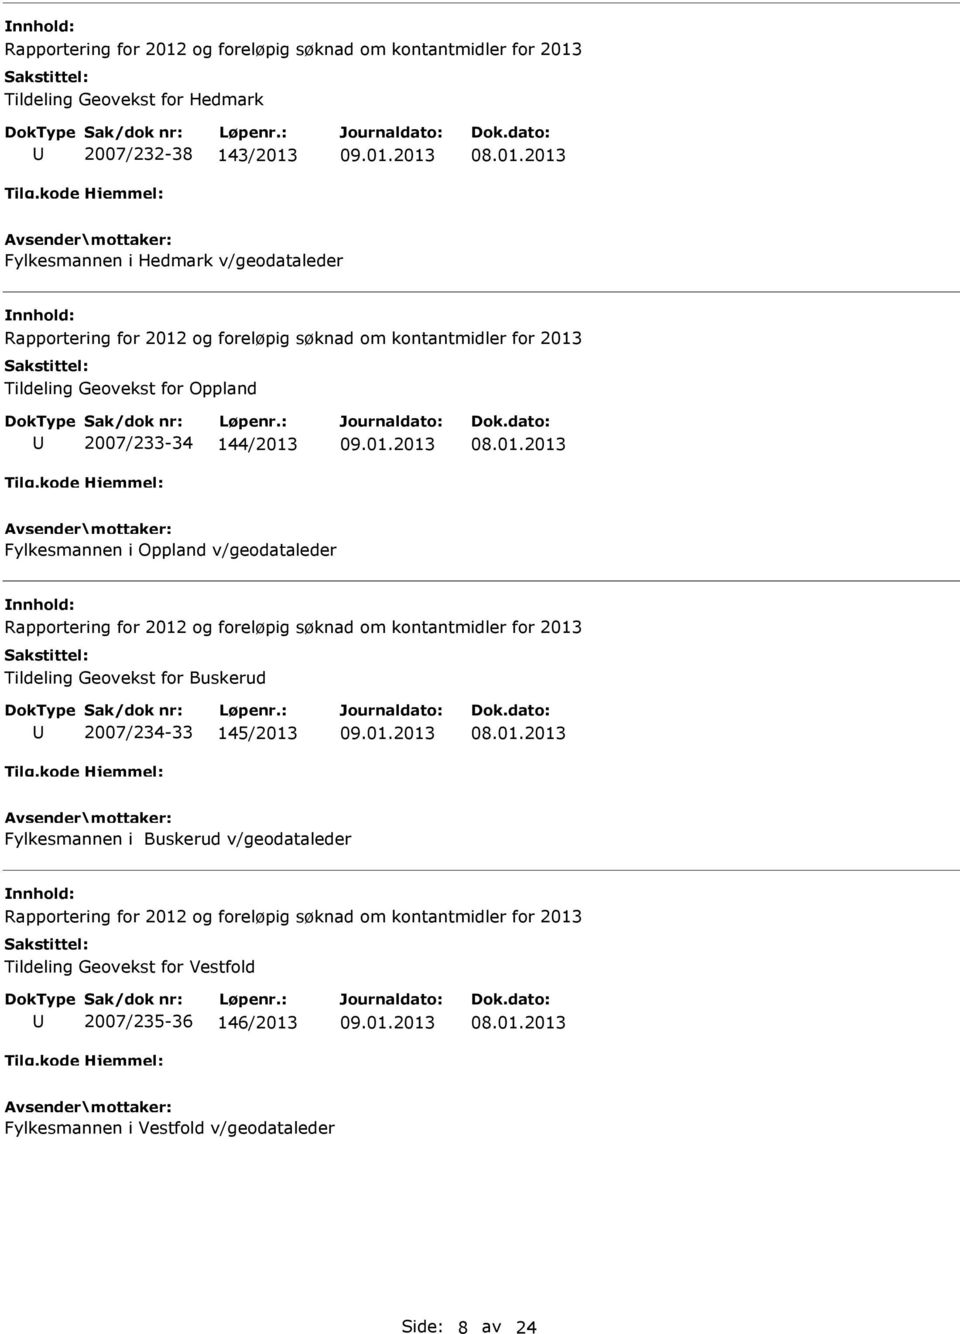 Tildeling Geovekst for Buskerud 2007/234-33 145/2013 Fylkesmannen i Buskerud v/geodataleder